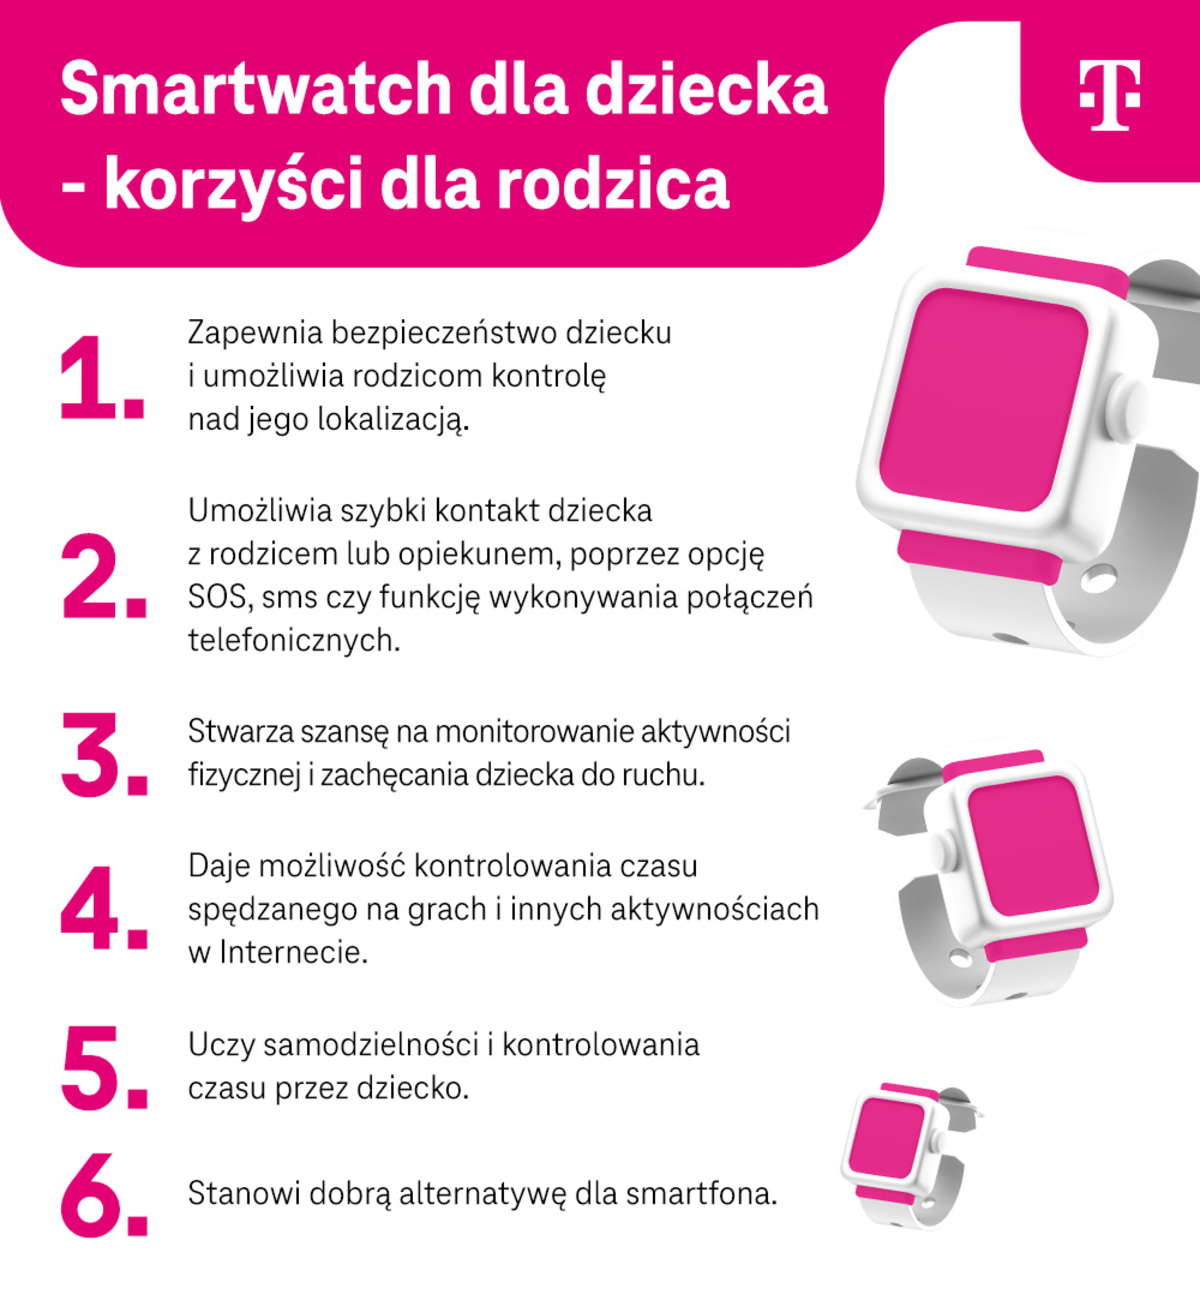 Smartwatch dla dziecka - korzyści dla rodzica - bezpieczeństwo dziecka, szybki kontakt z dzieckiem - infografika